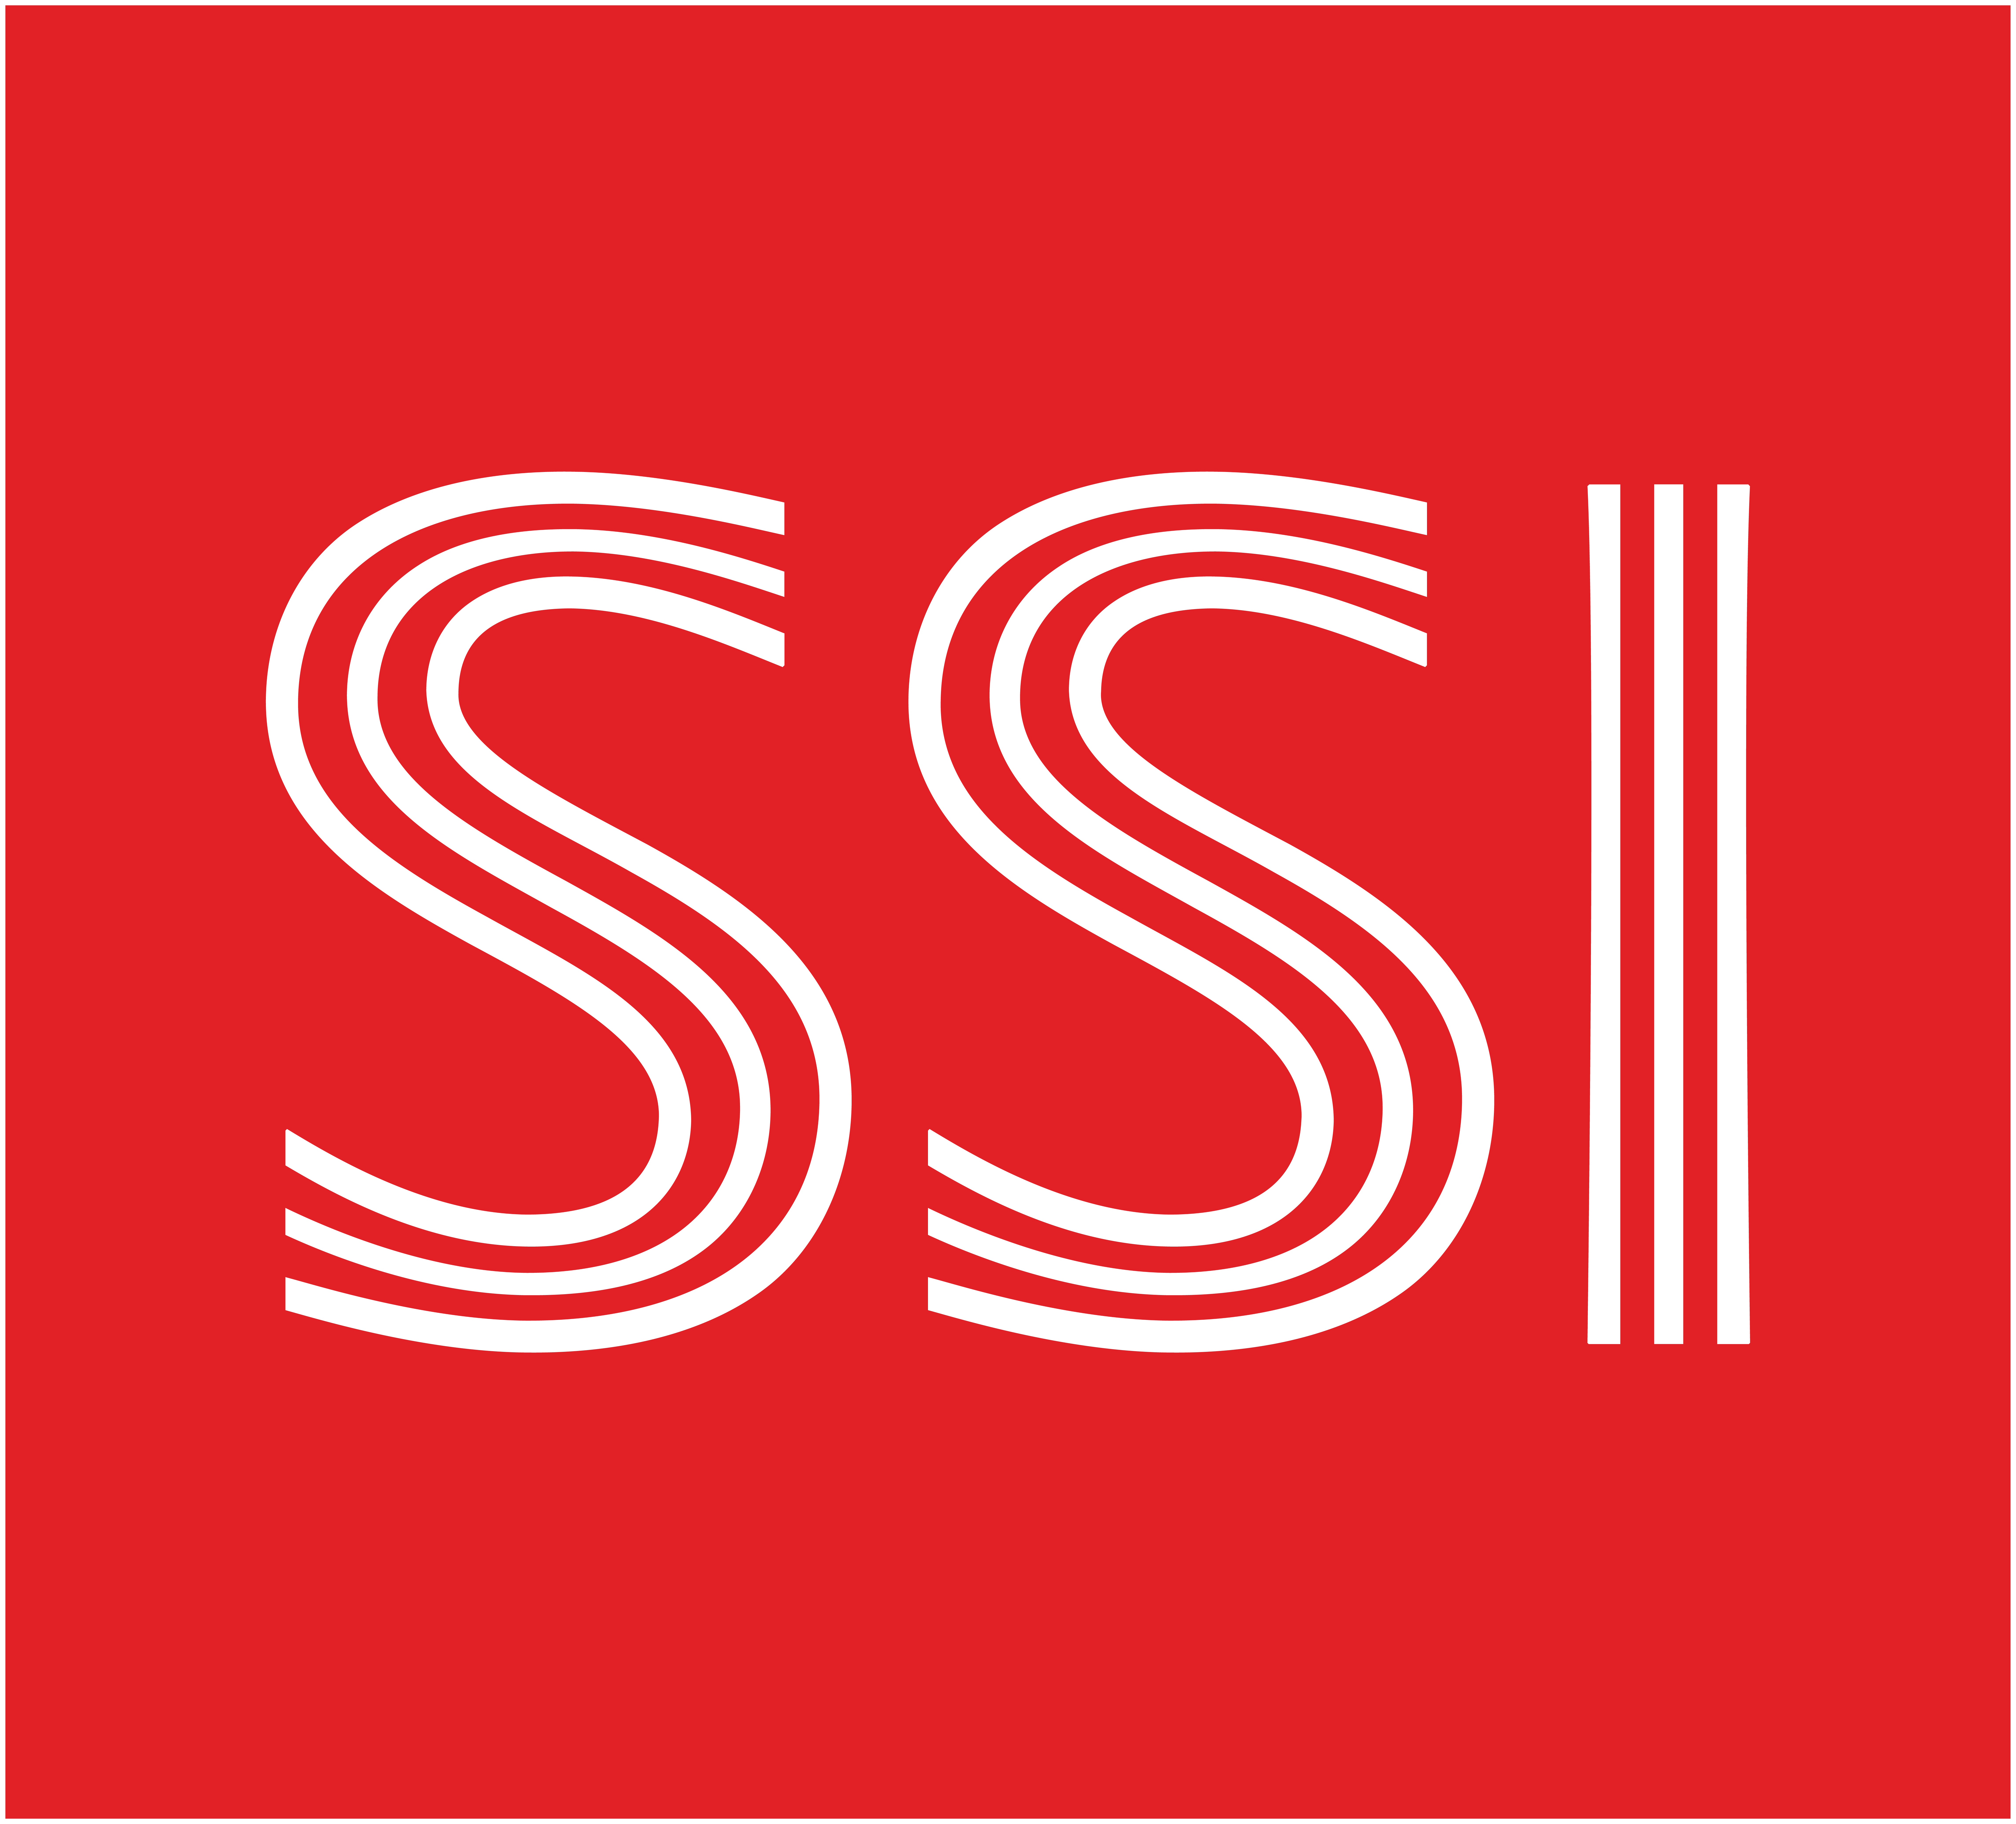 Phân tích tài chính của Công ty cổ phần Chứng khoán SSI (HOSE)